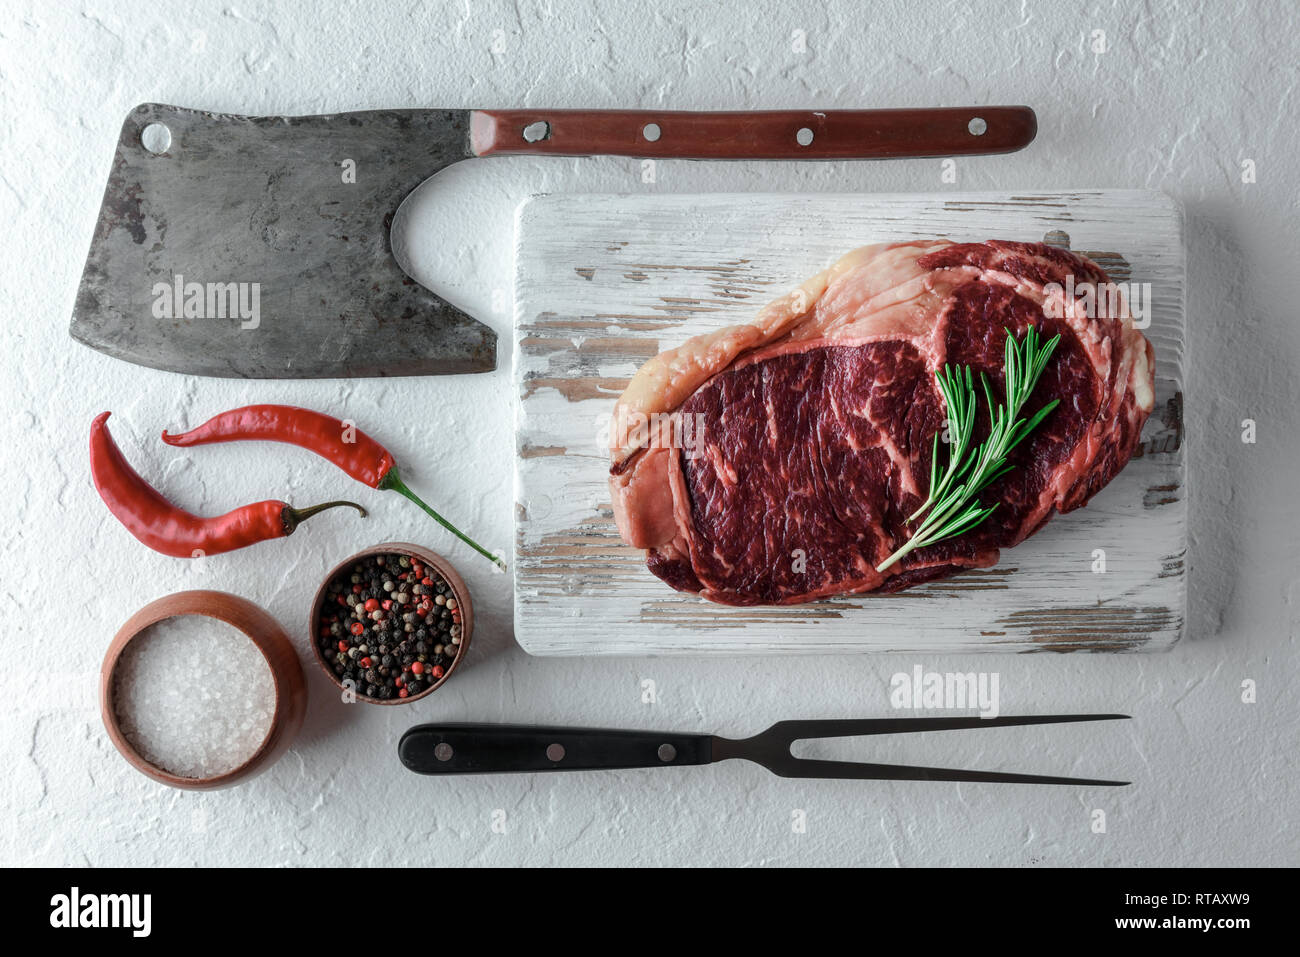 Le persillage Ribeye Steak sur plaque noire. Hacher la viande de boeuf Banque D'Images